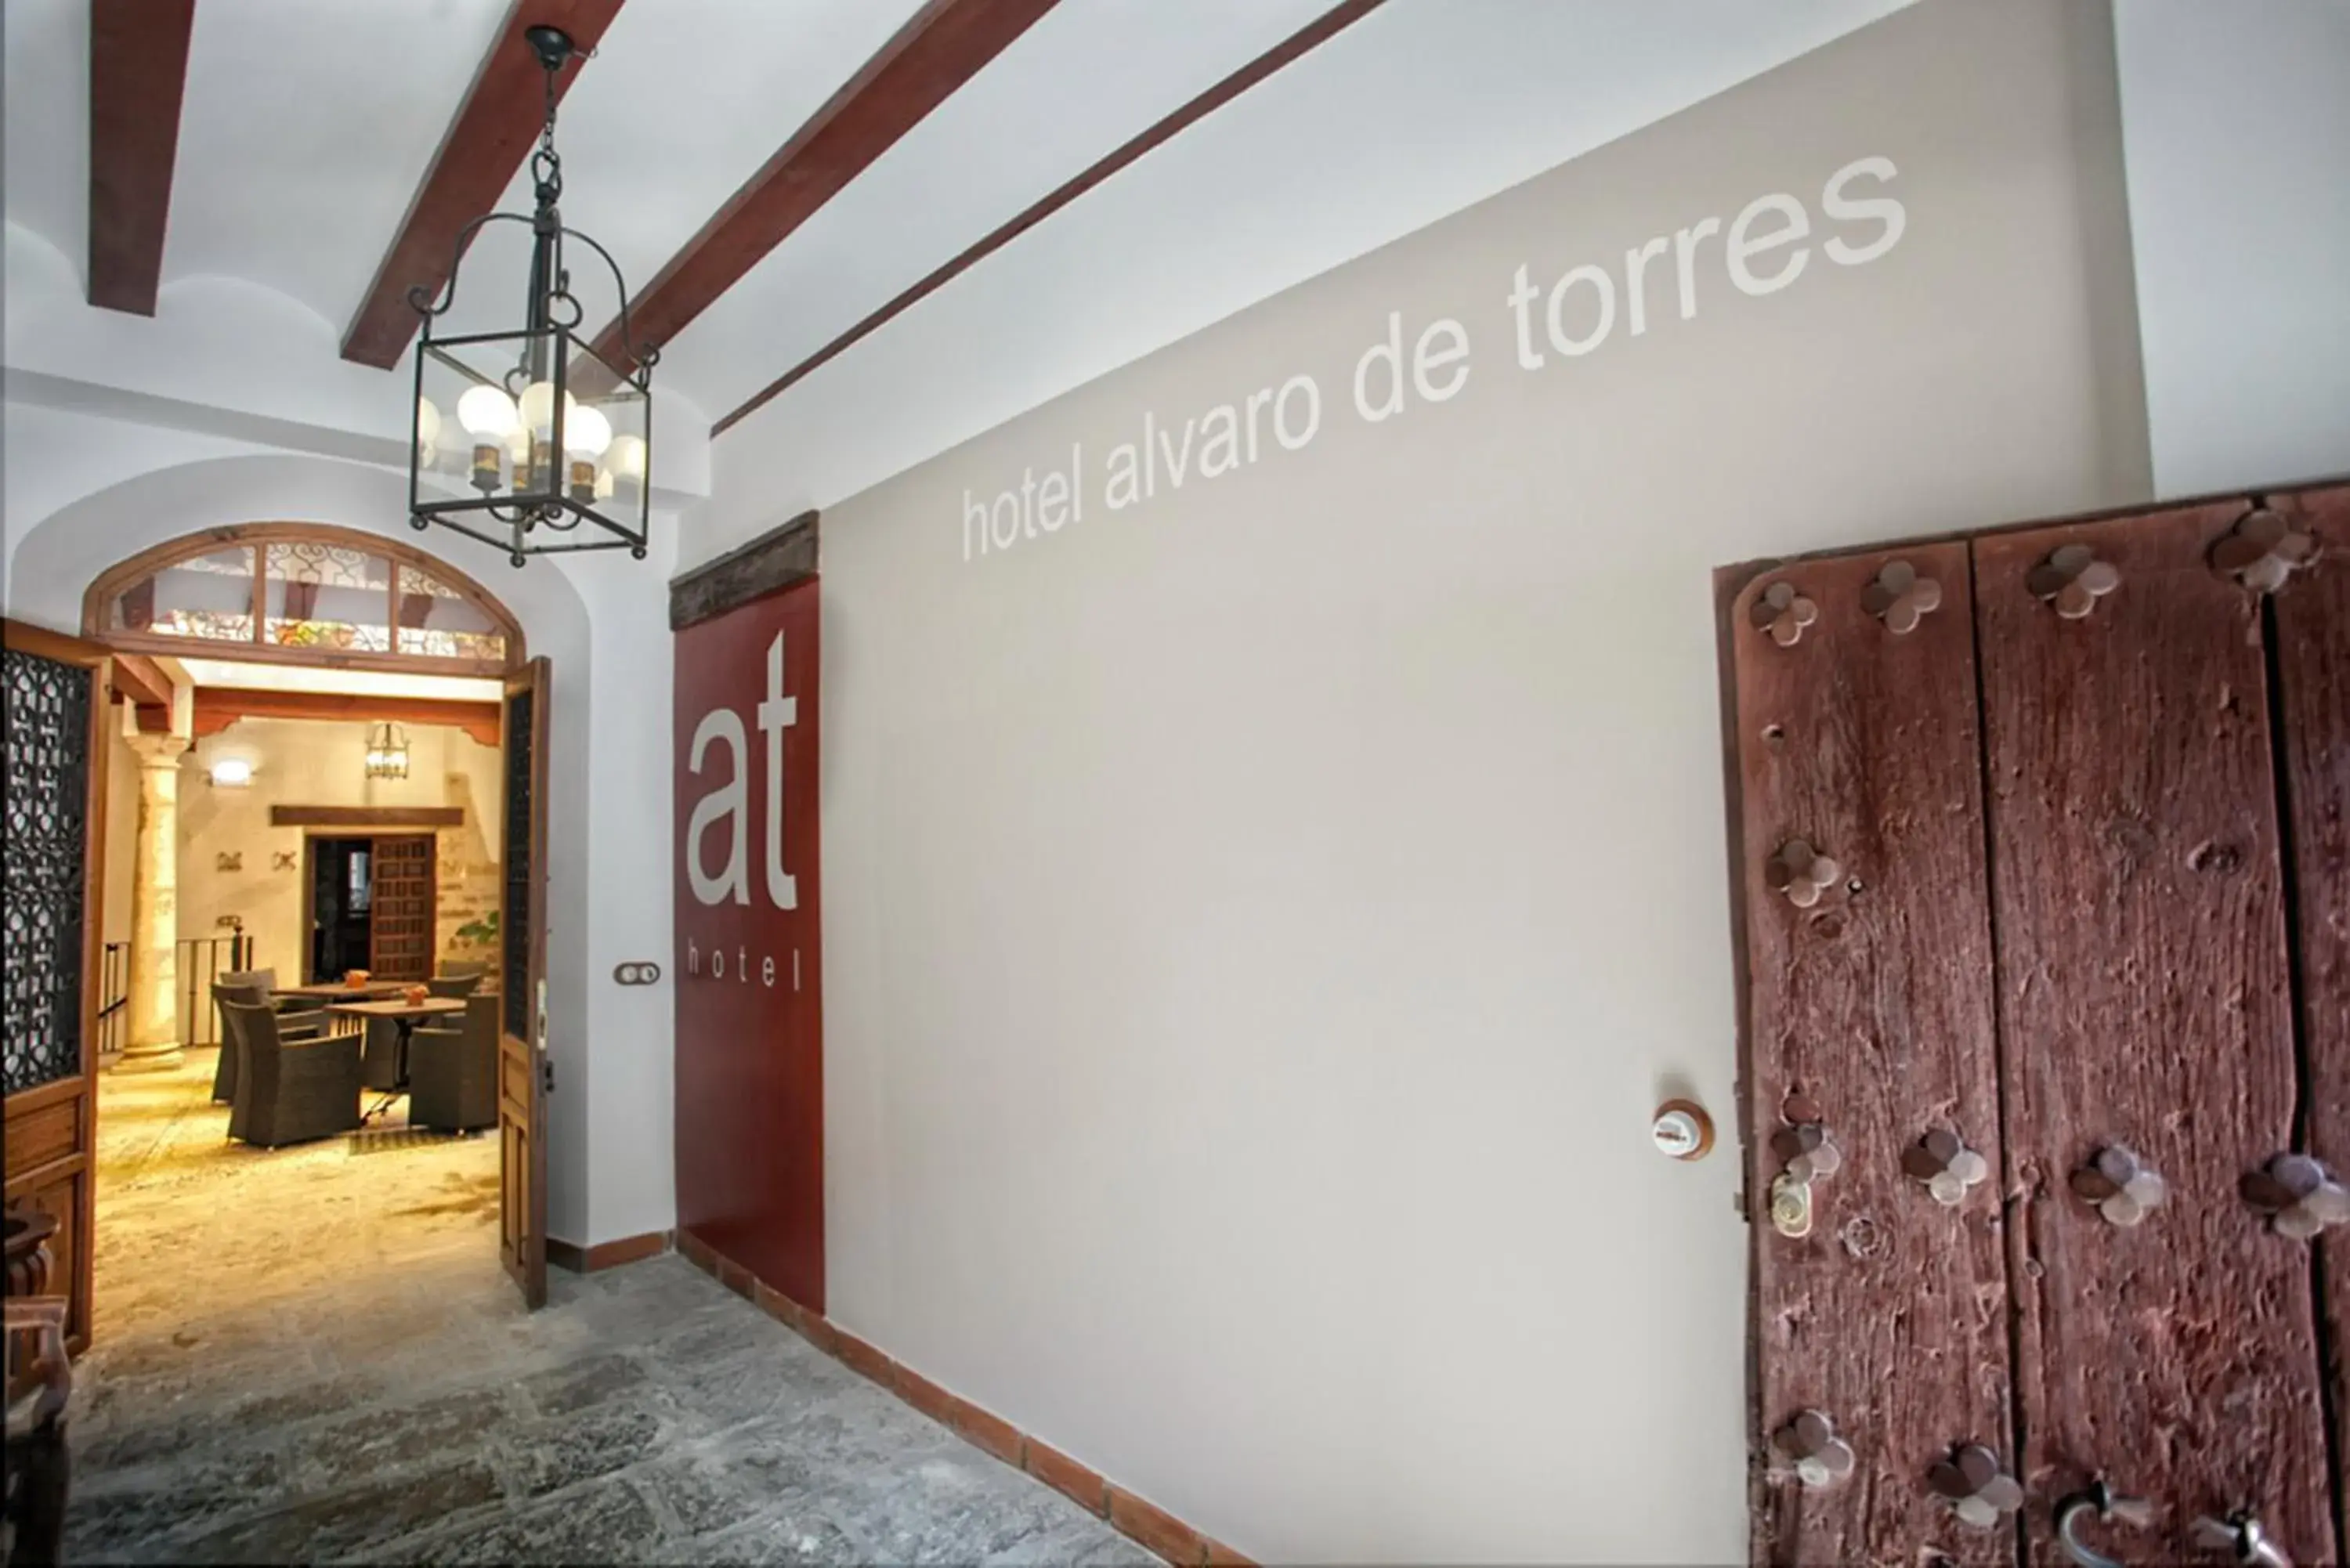 Property logo or sign in Alvaro de Torres Boutique